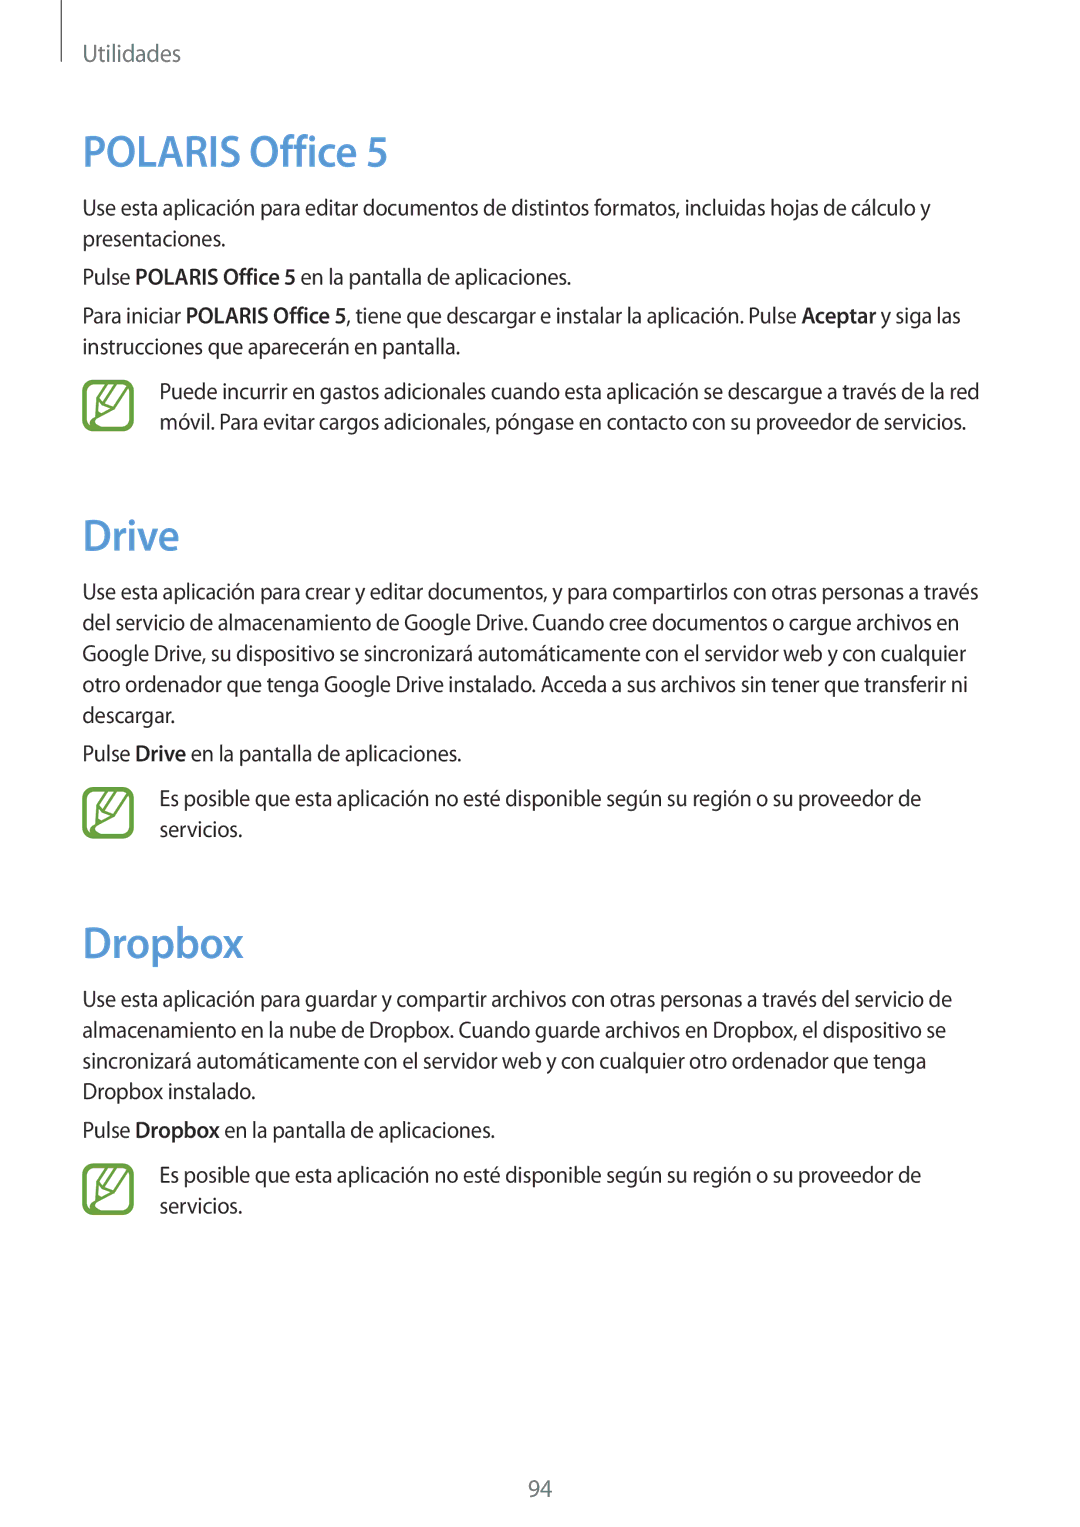 Samsung GT-N8020EAAATL manual Polaris Office, Drive, Dropbox 